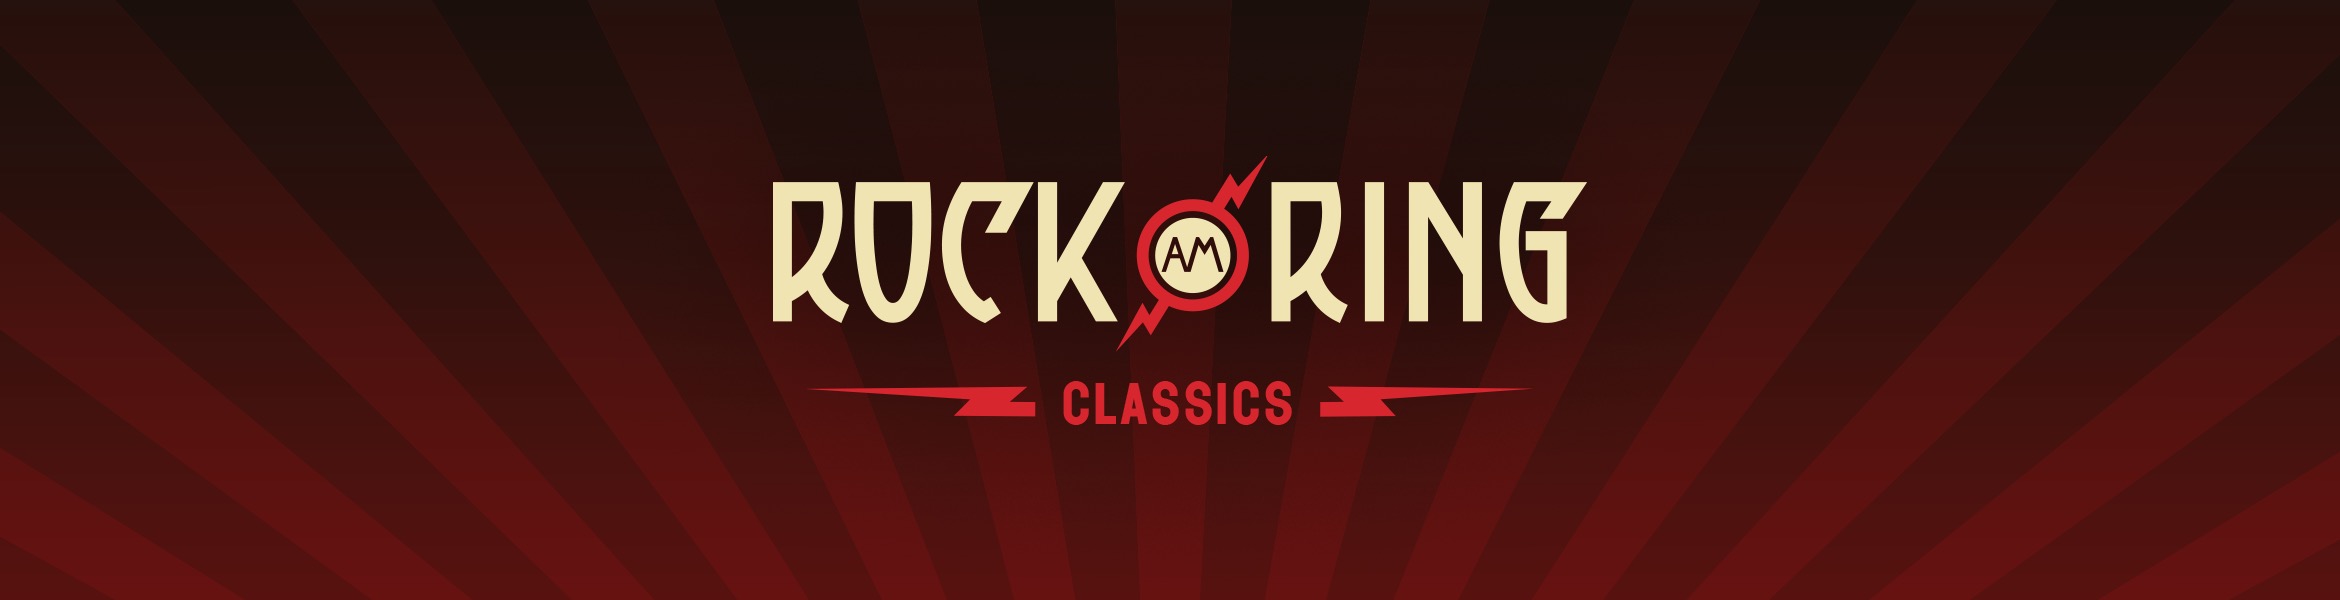 Rock am Ring Classics